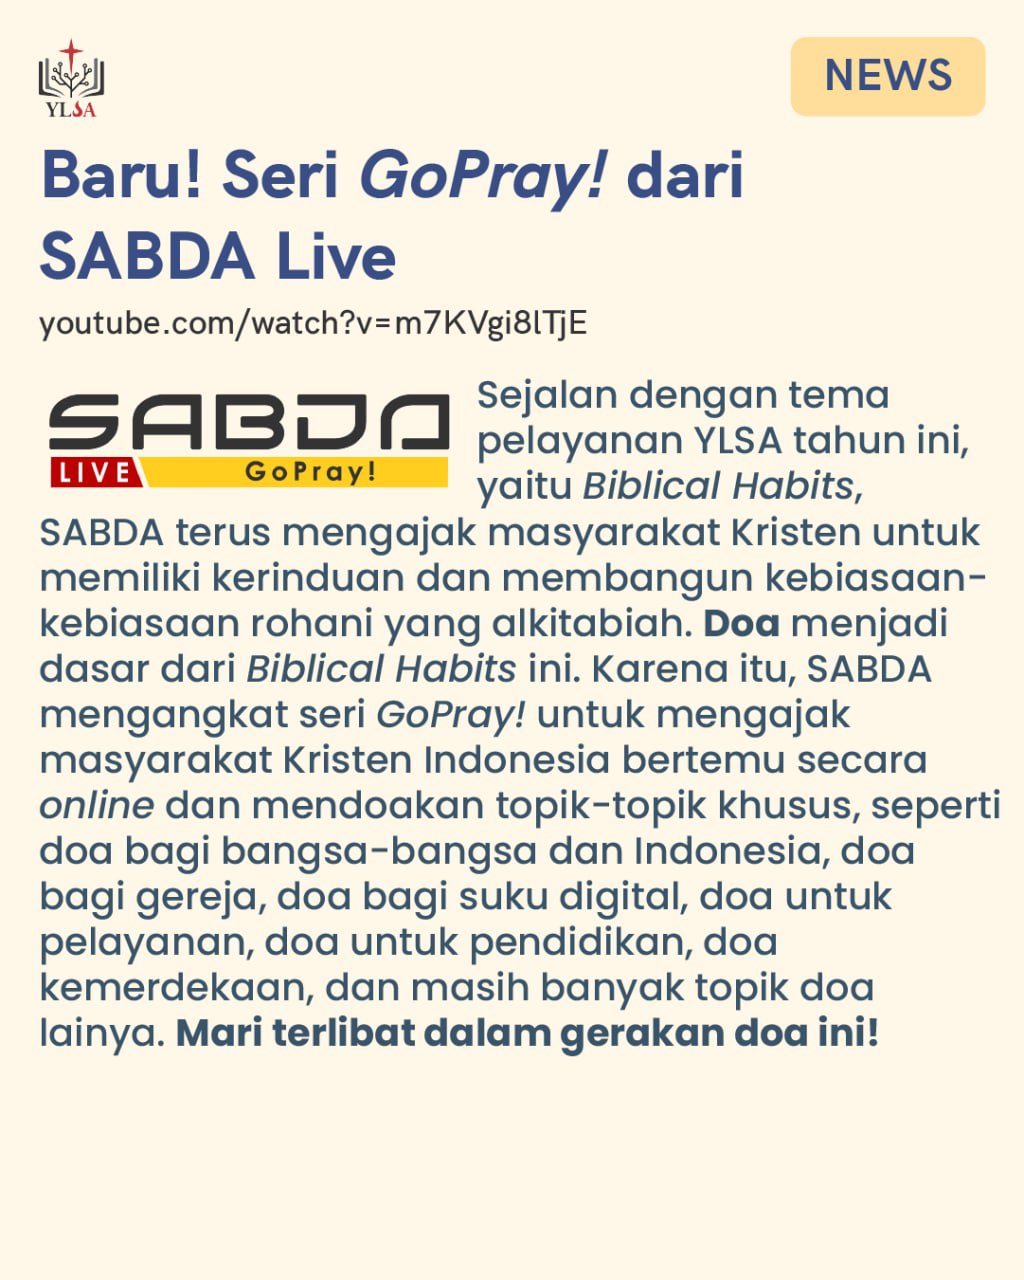 Seri GoPray! untuk mengajak masyarakat Kristen Indonesia untuk terlibat dalam gerakan doa.